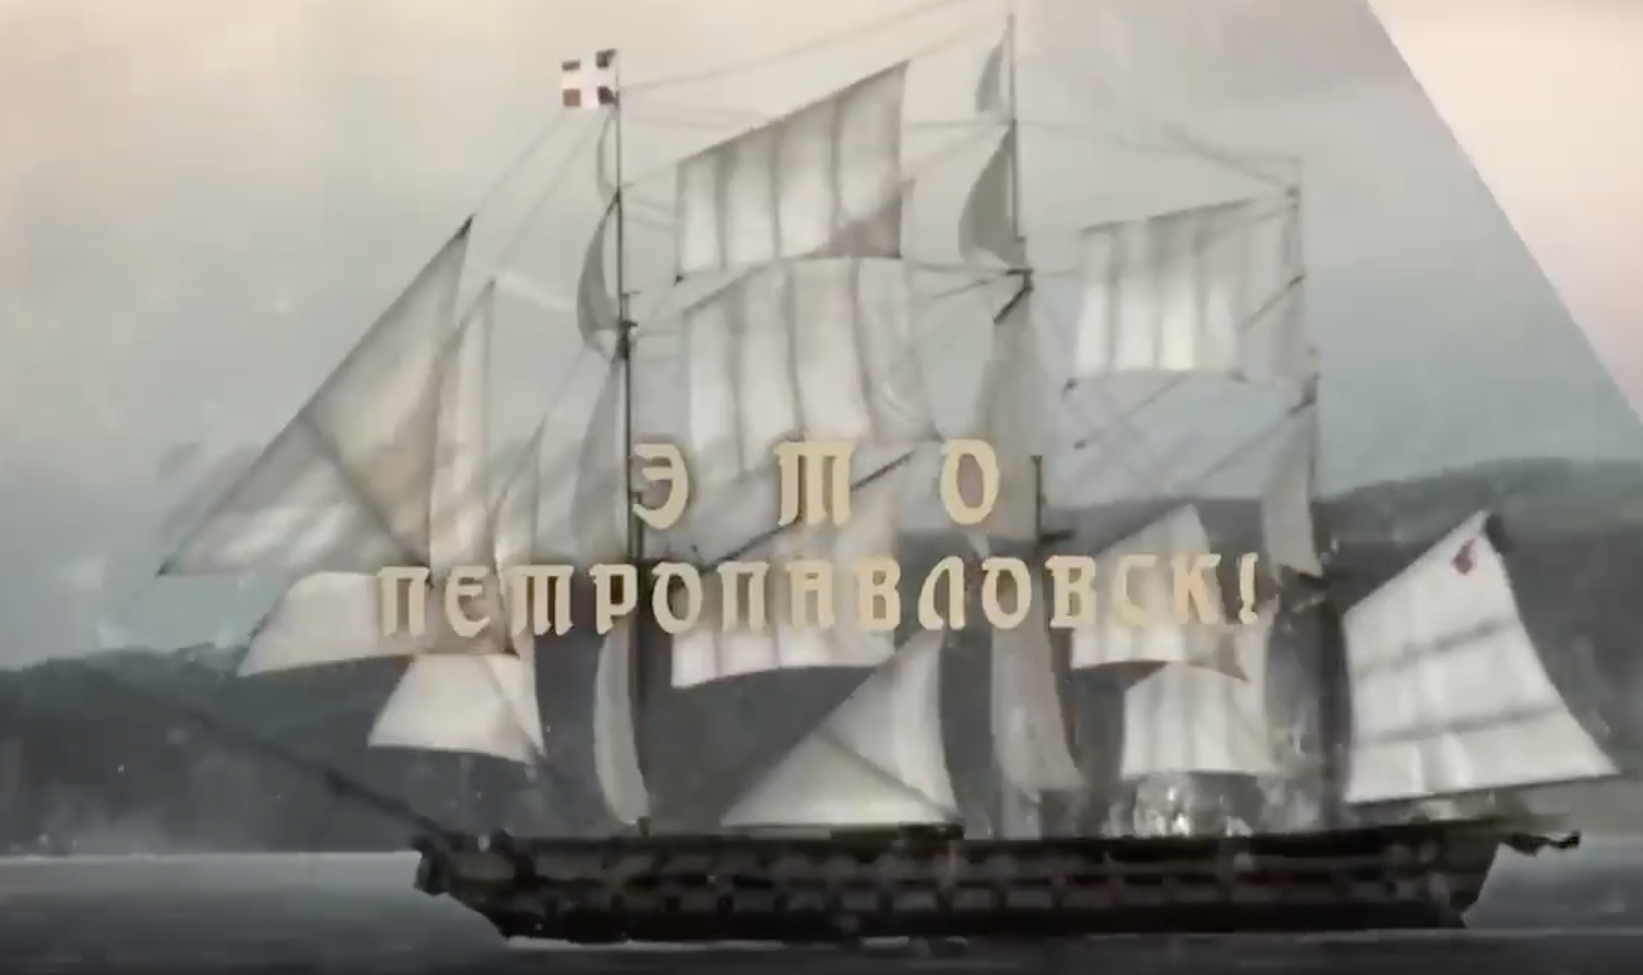 Radio Tapok выпустил песню о подвиге защитников Петропавловска-Камчатского в 1854 году